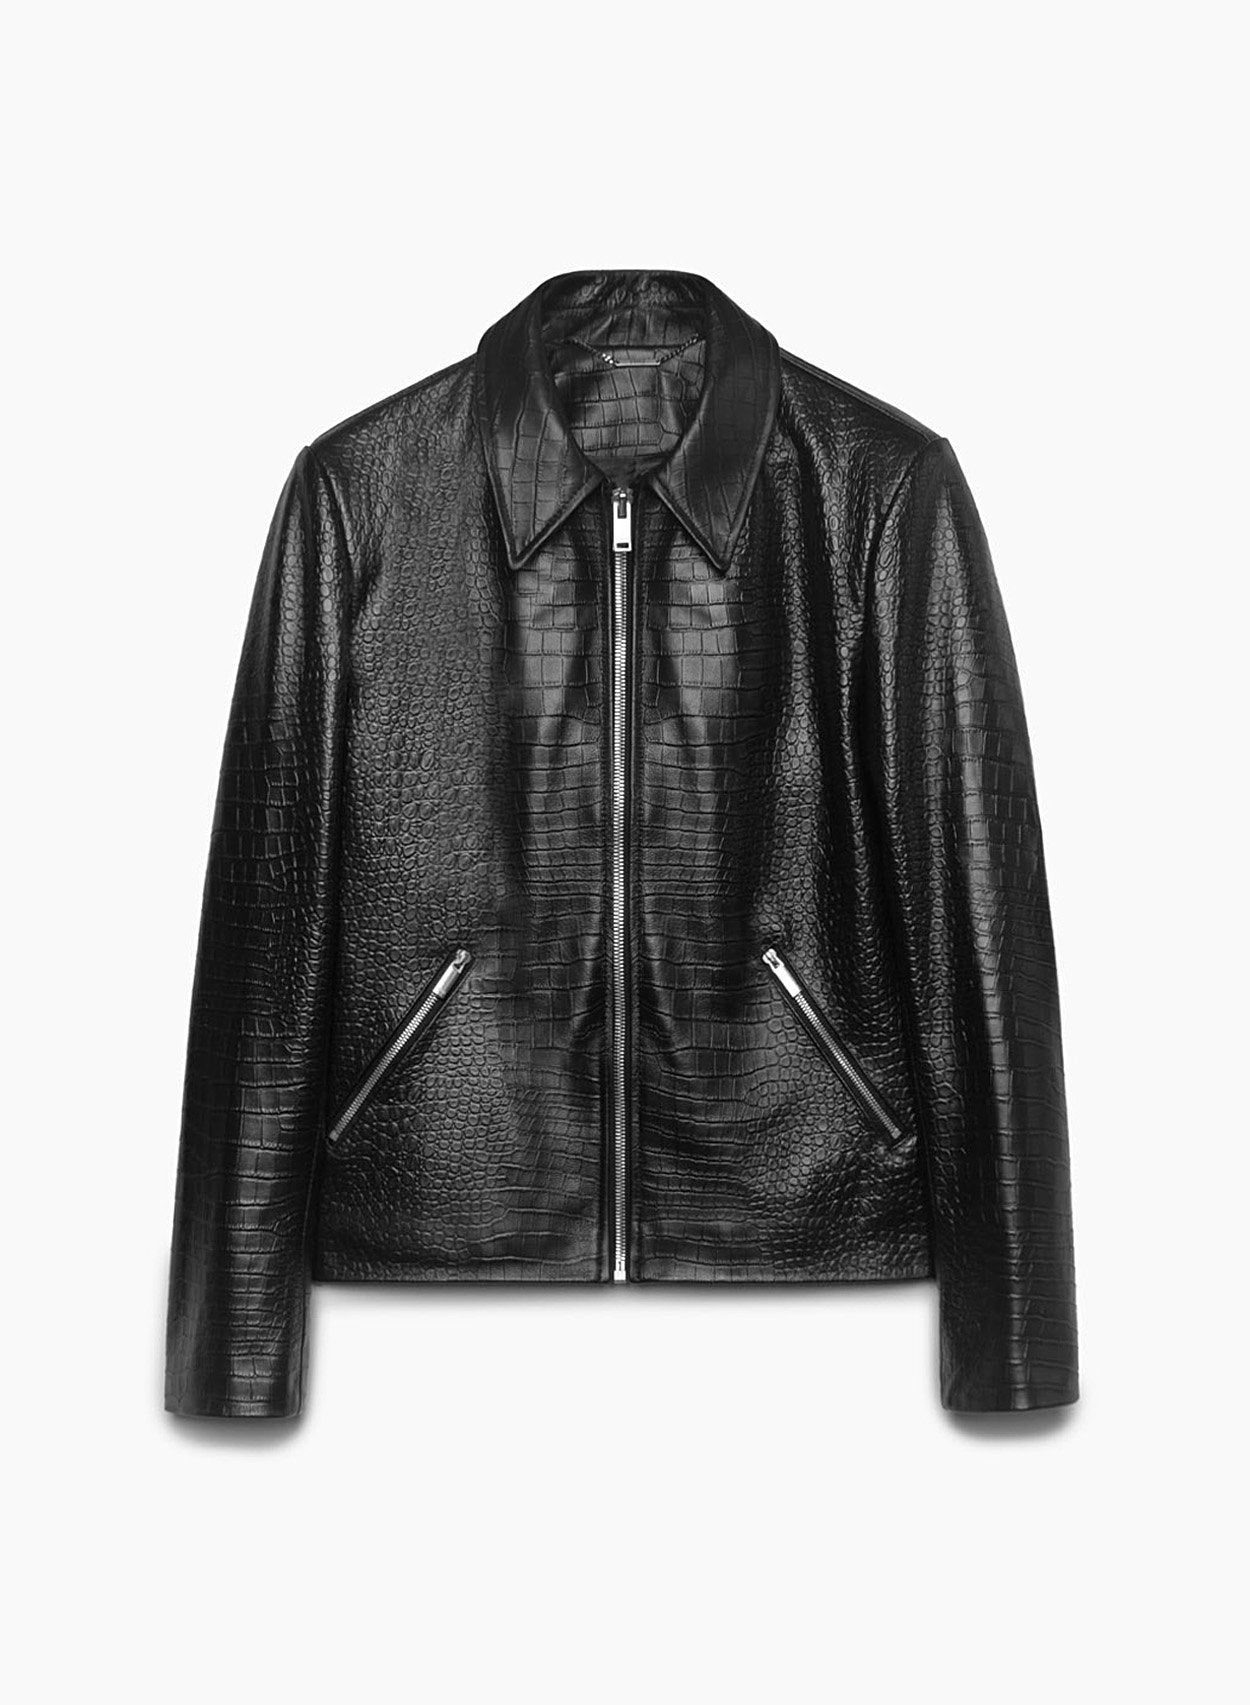 Croc Effect Leather Western Jacket – PhixClothing.com